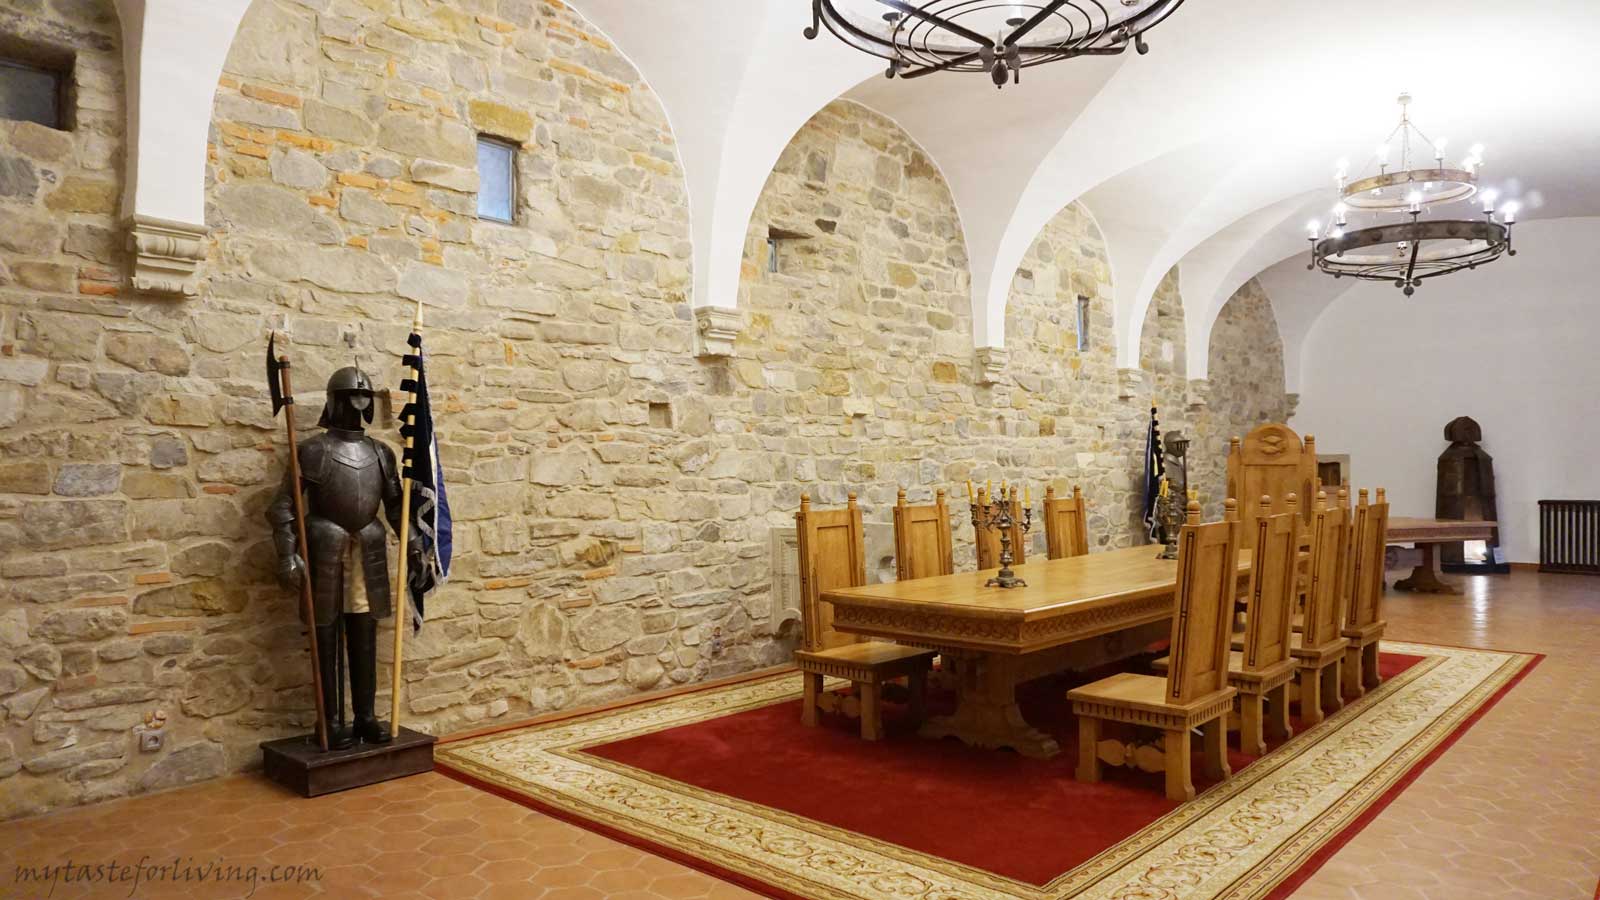 Красиво запазената крепост Фъгъраш се намира в град Фъгъраш, намиращ се между градовете Сибиу и Брашов в румънския регион Трансилвания. 